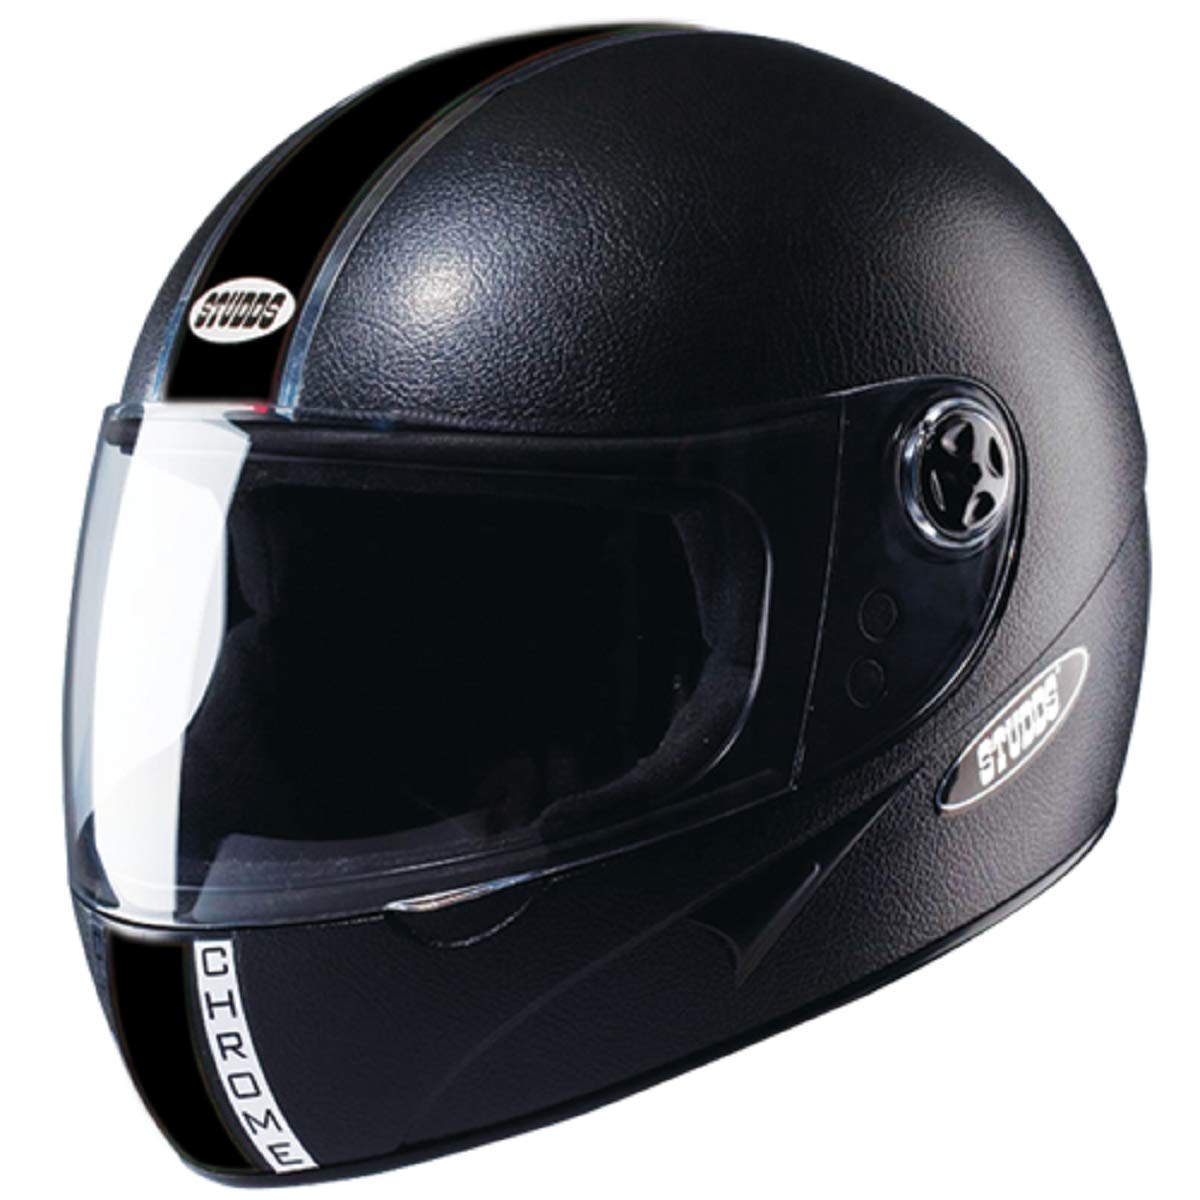 Studds chrome eco full-face helmet